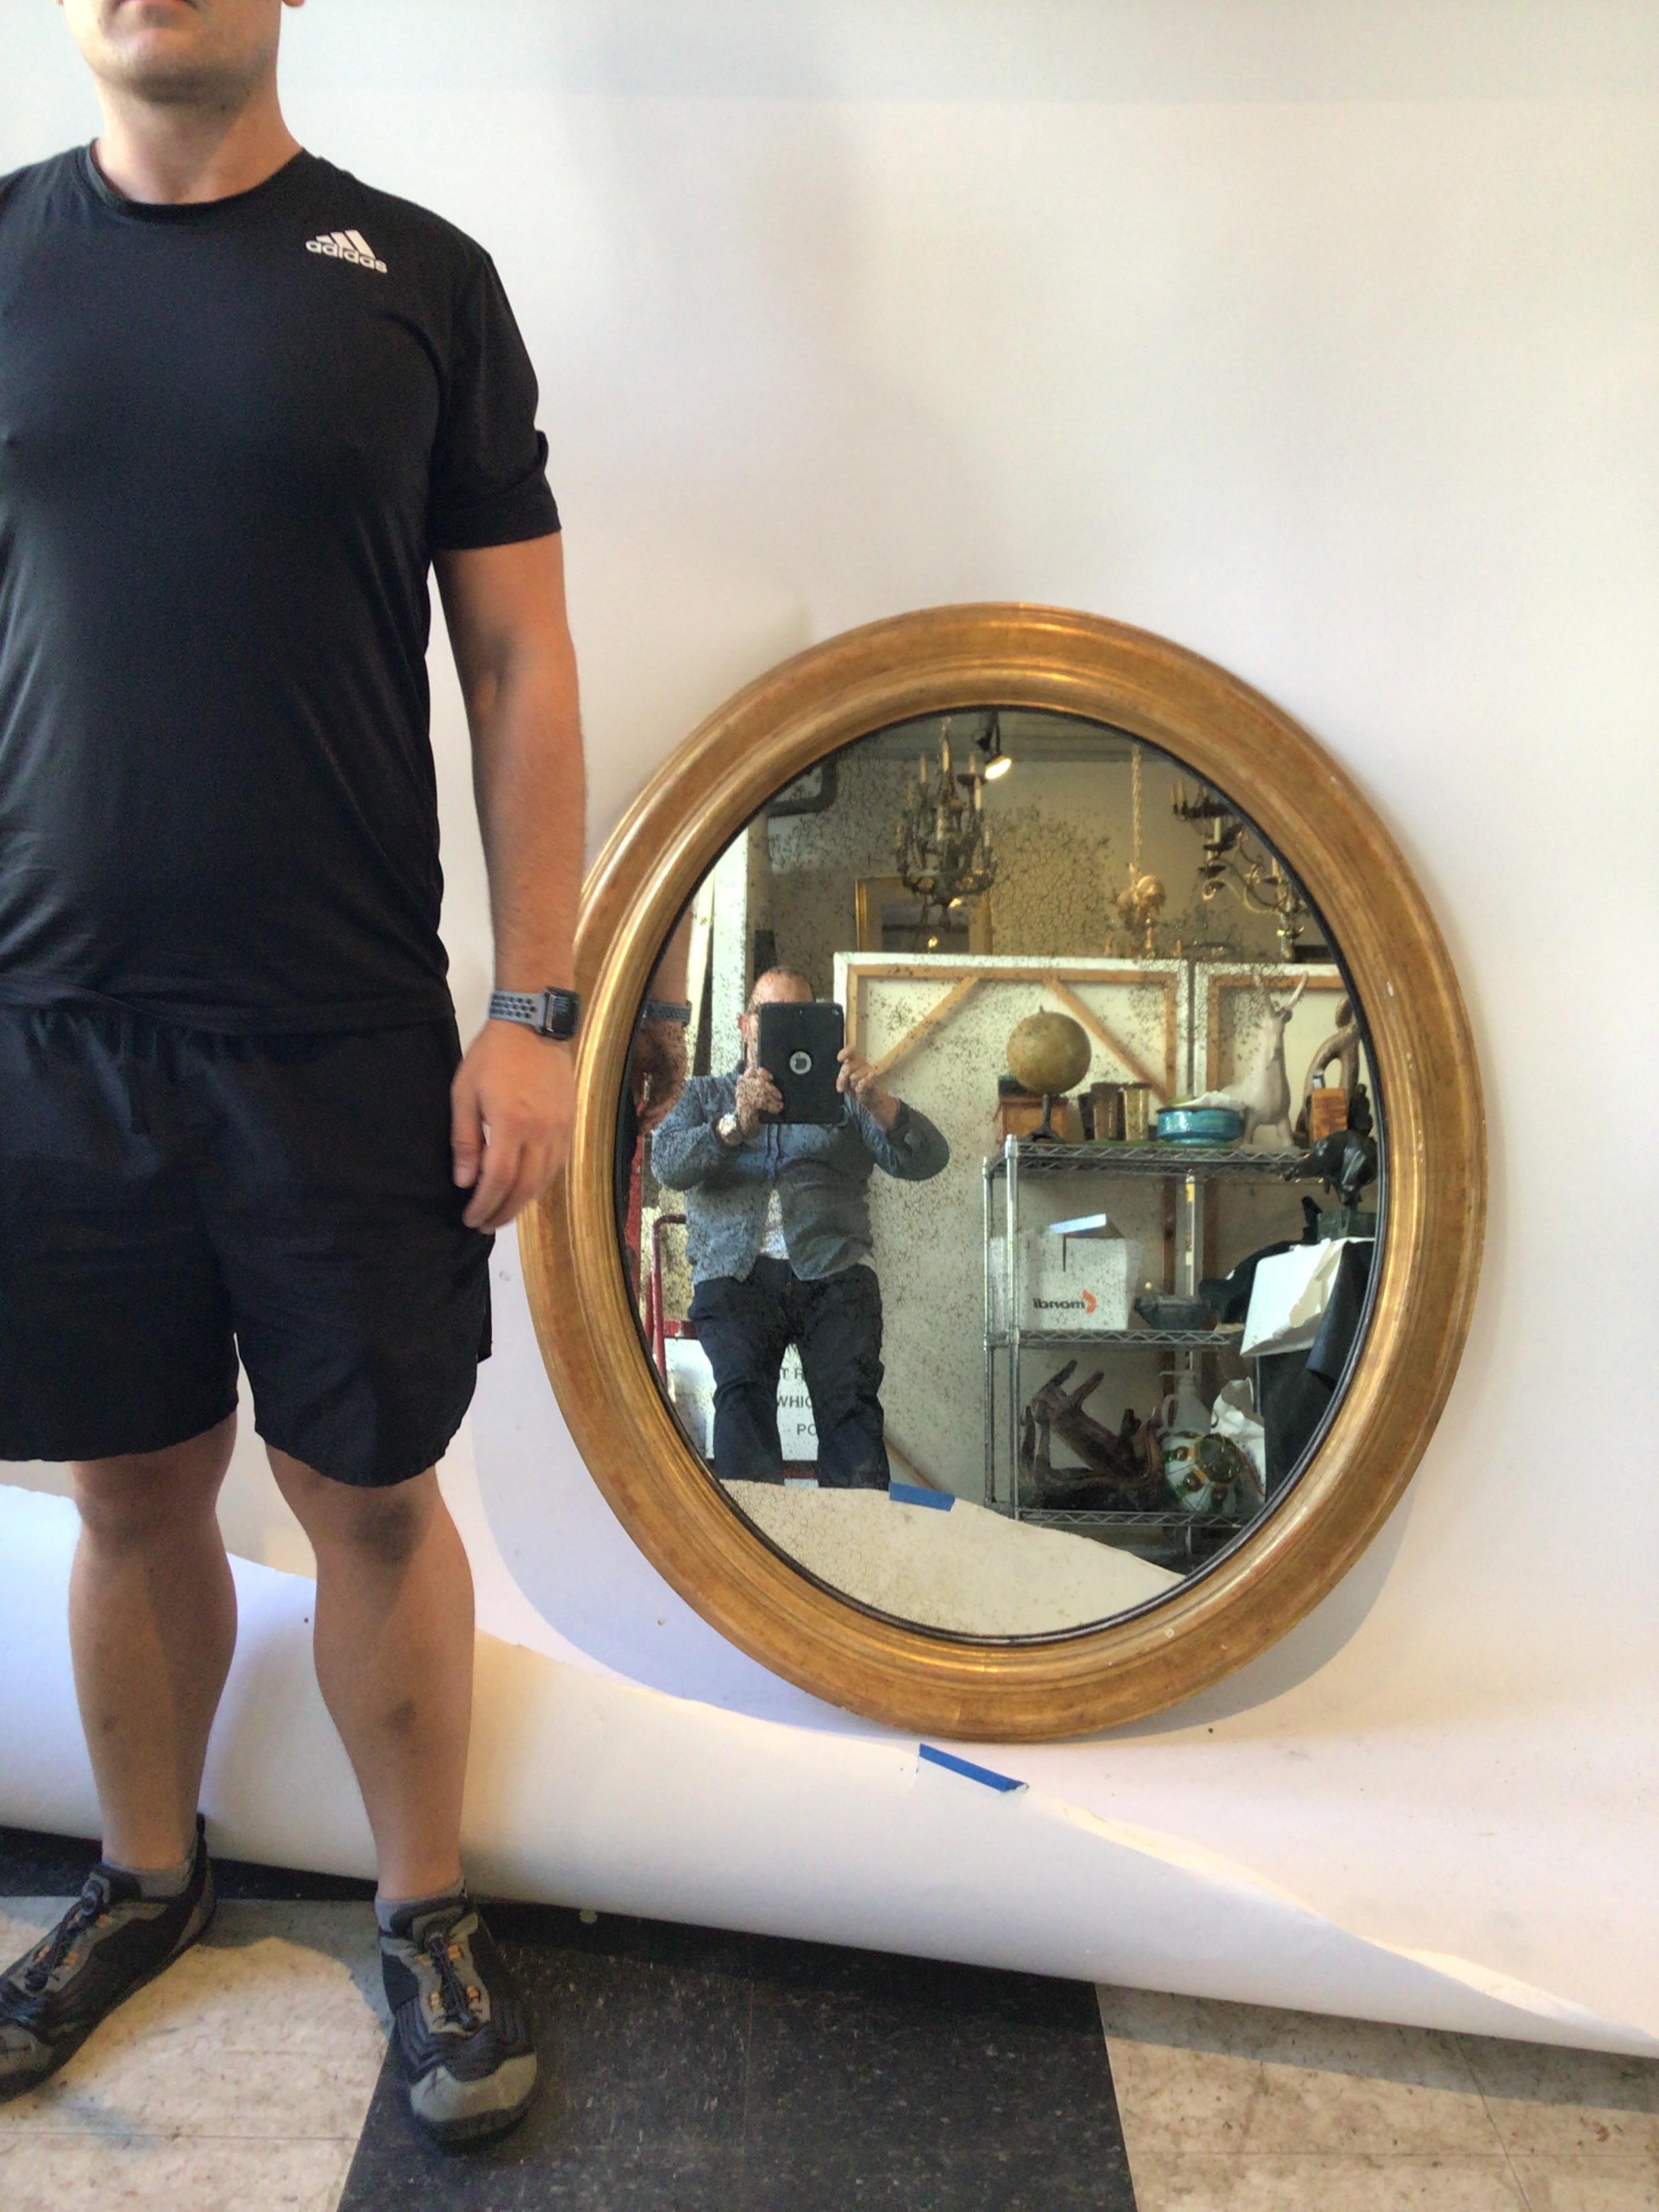 Grand miroir ovale encadré de bois doré avec miroir vieilli.